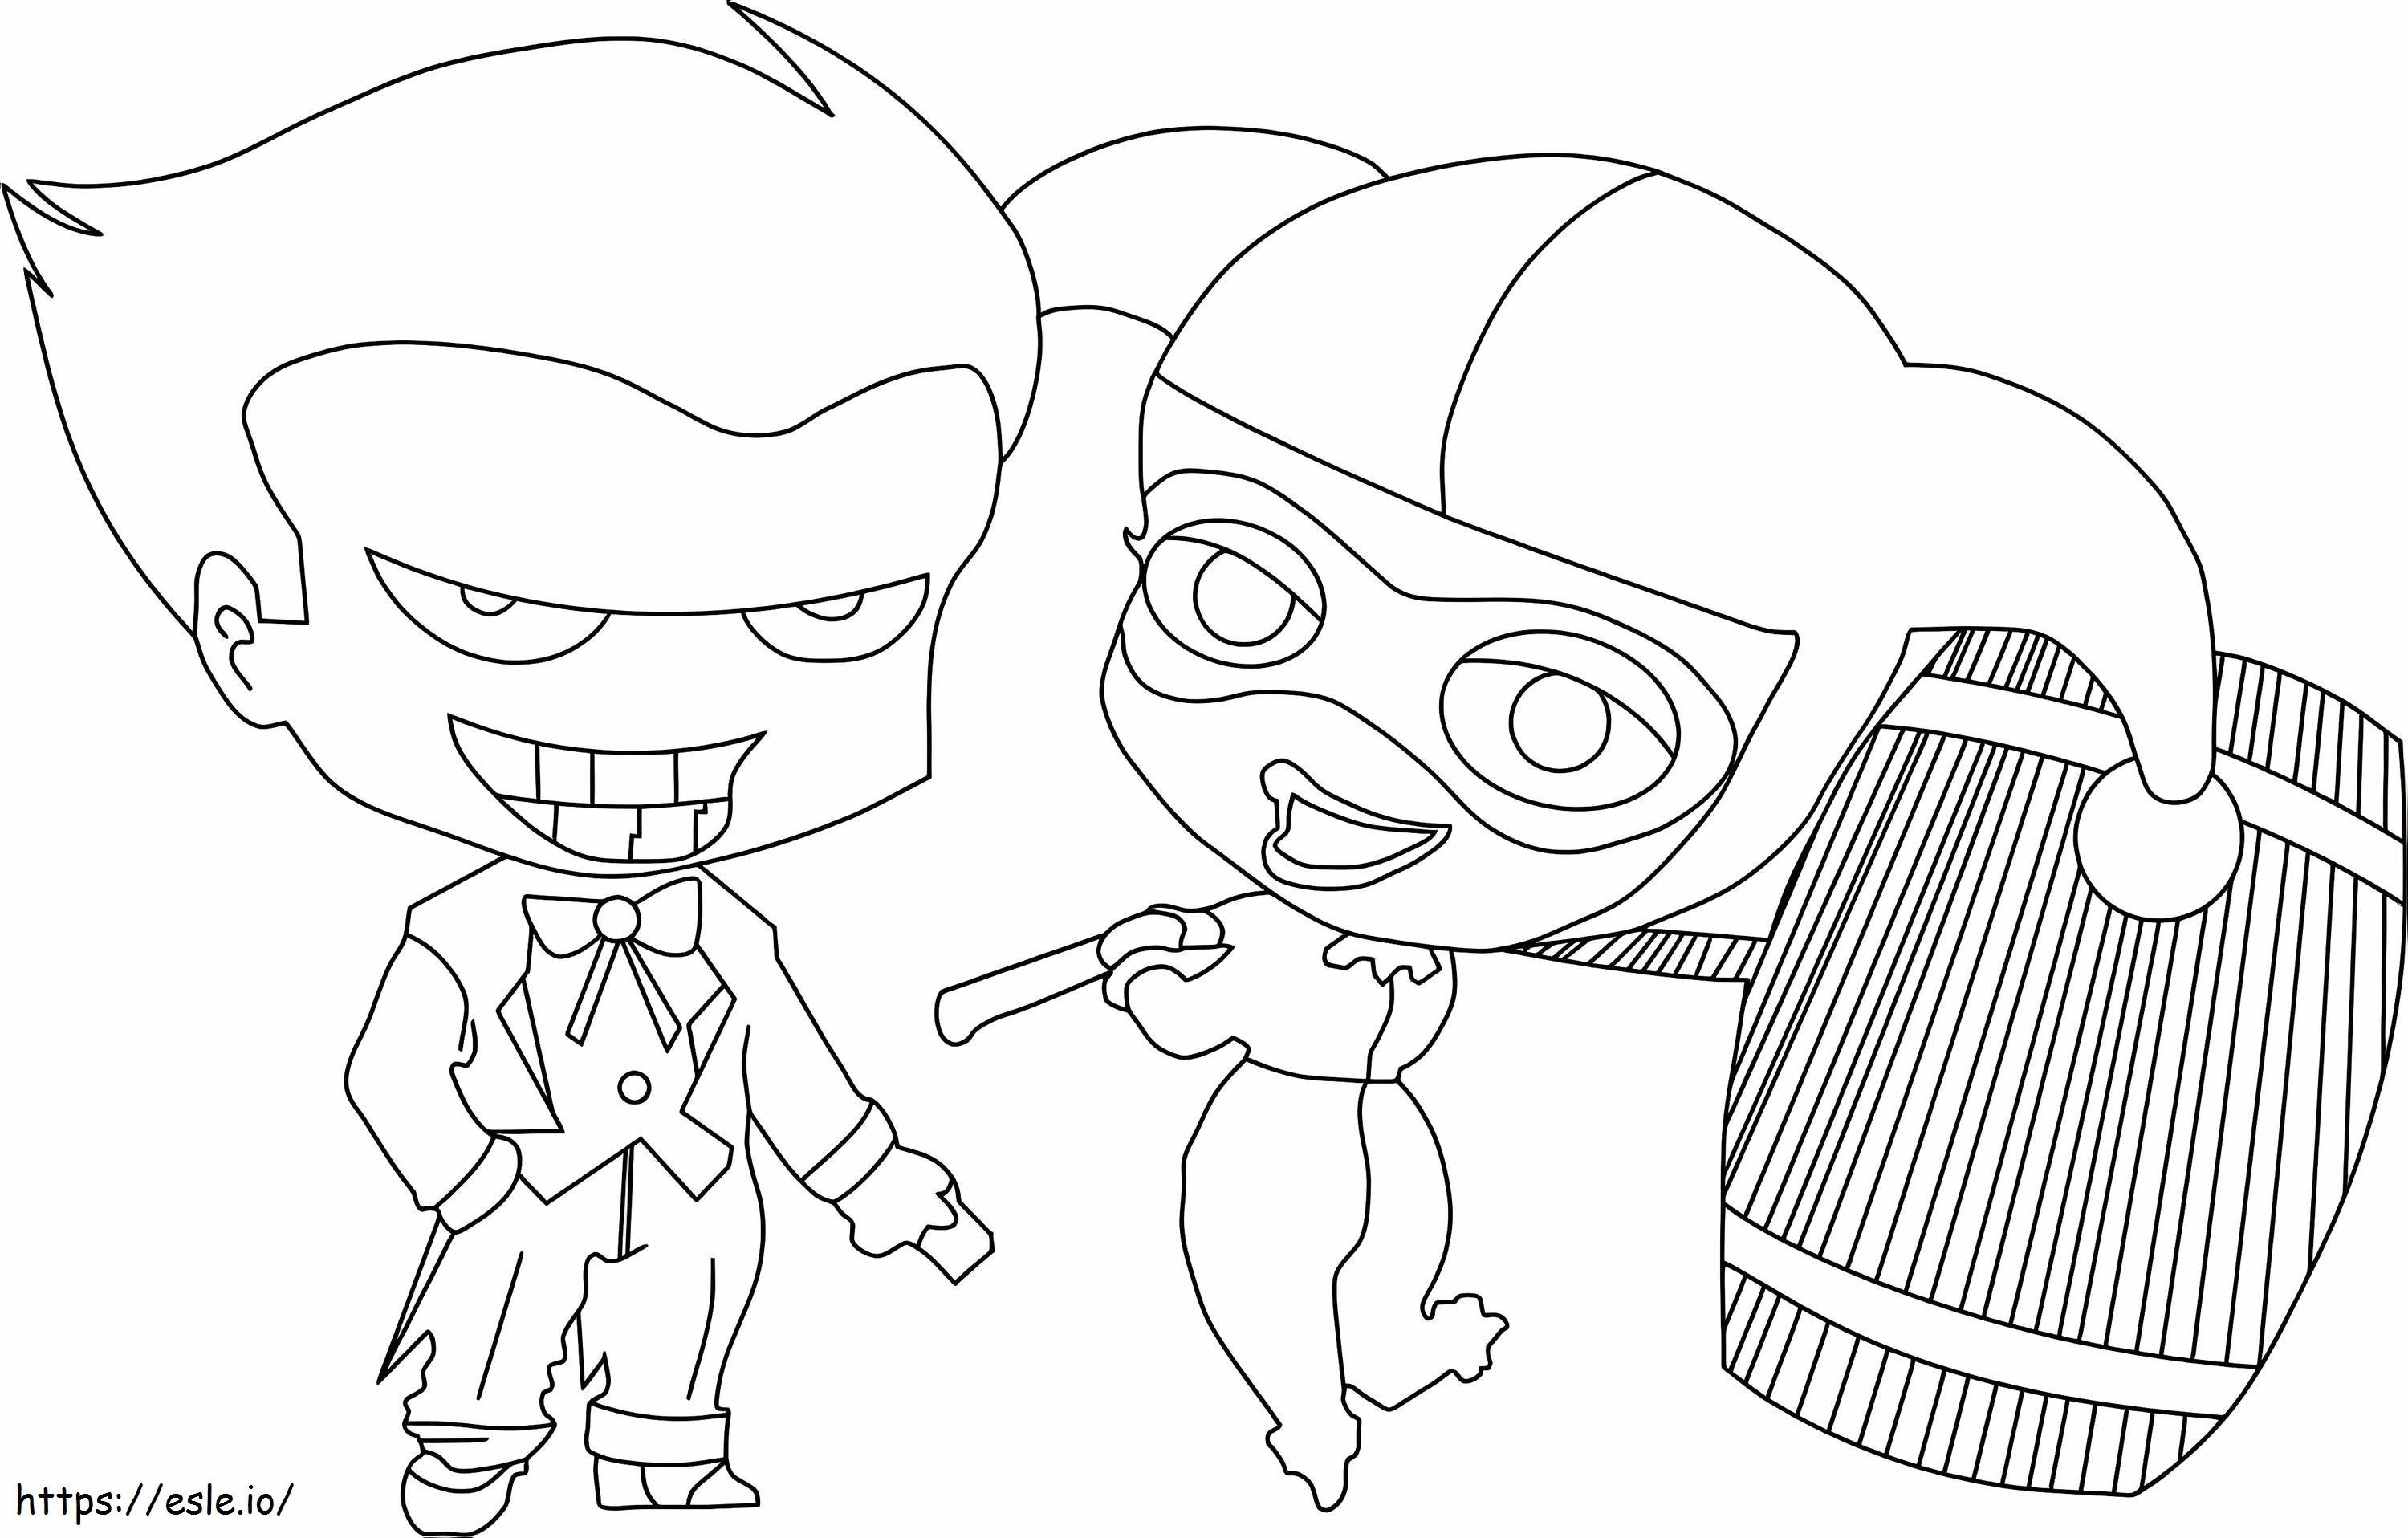 Chibi Joker e Chibi Harley Quinn con in mano un martello da colorare